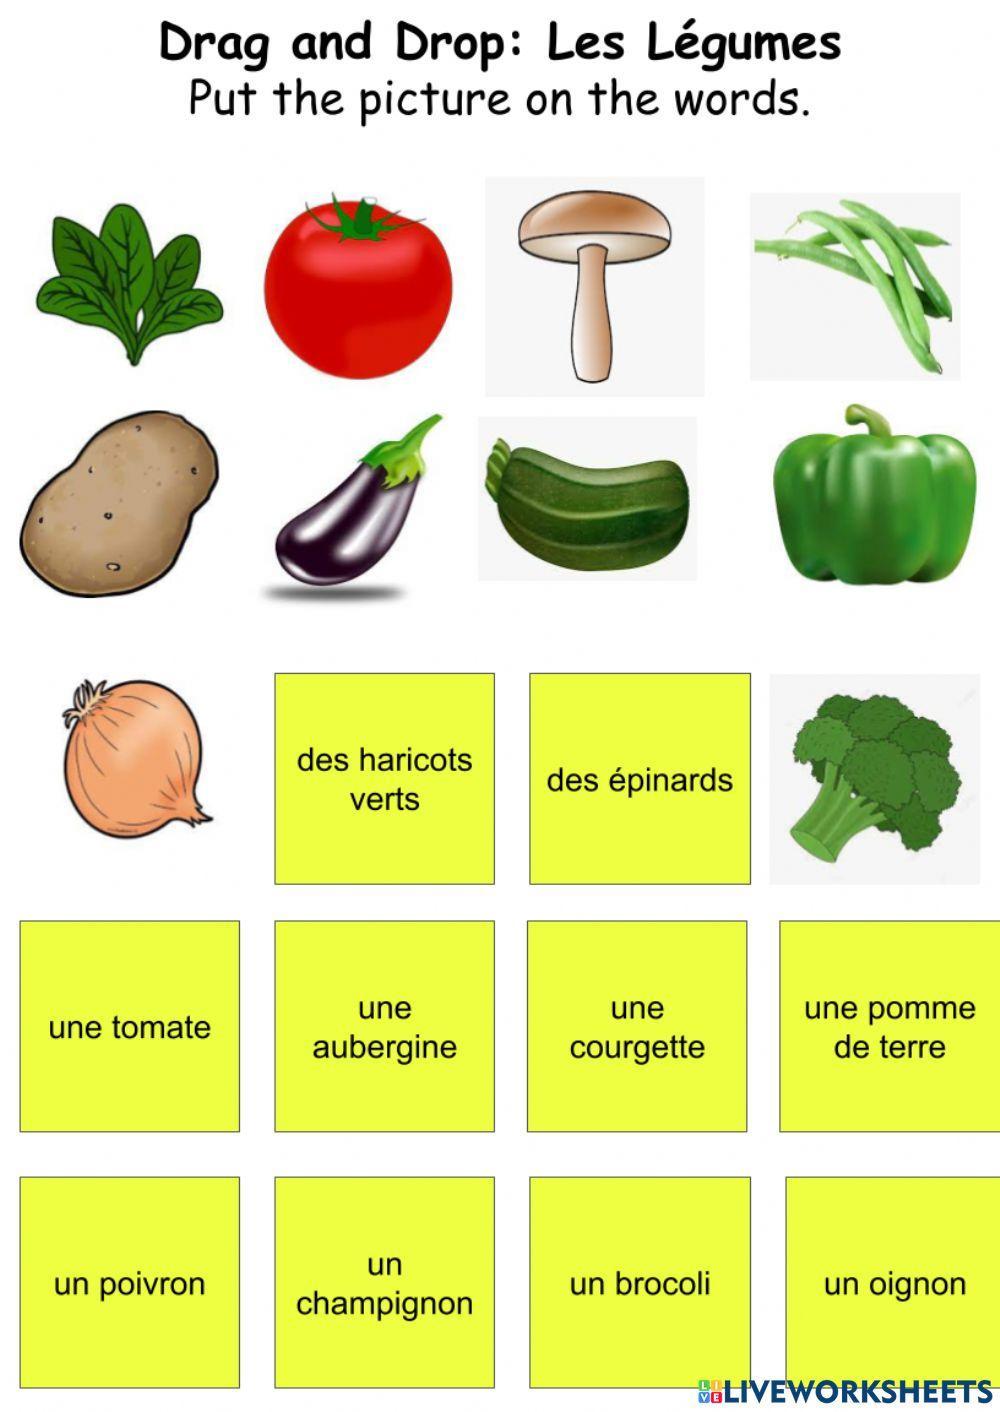 Les Légumes-Drag and Drop